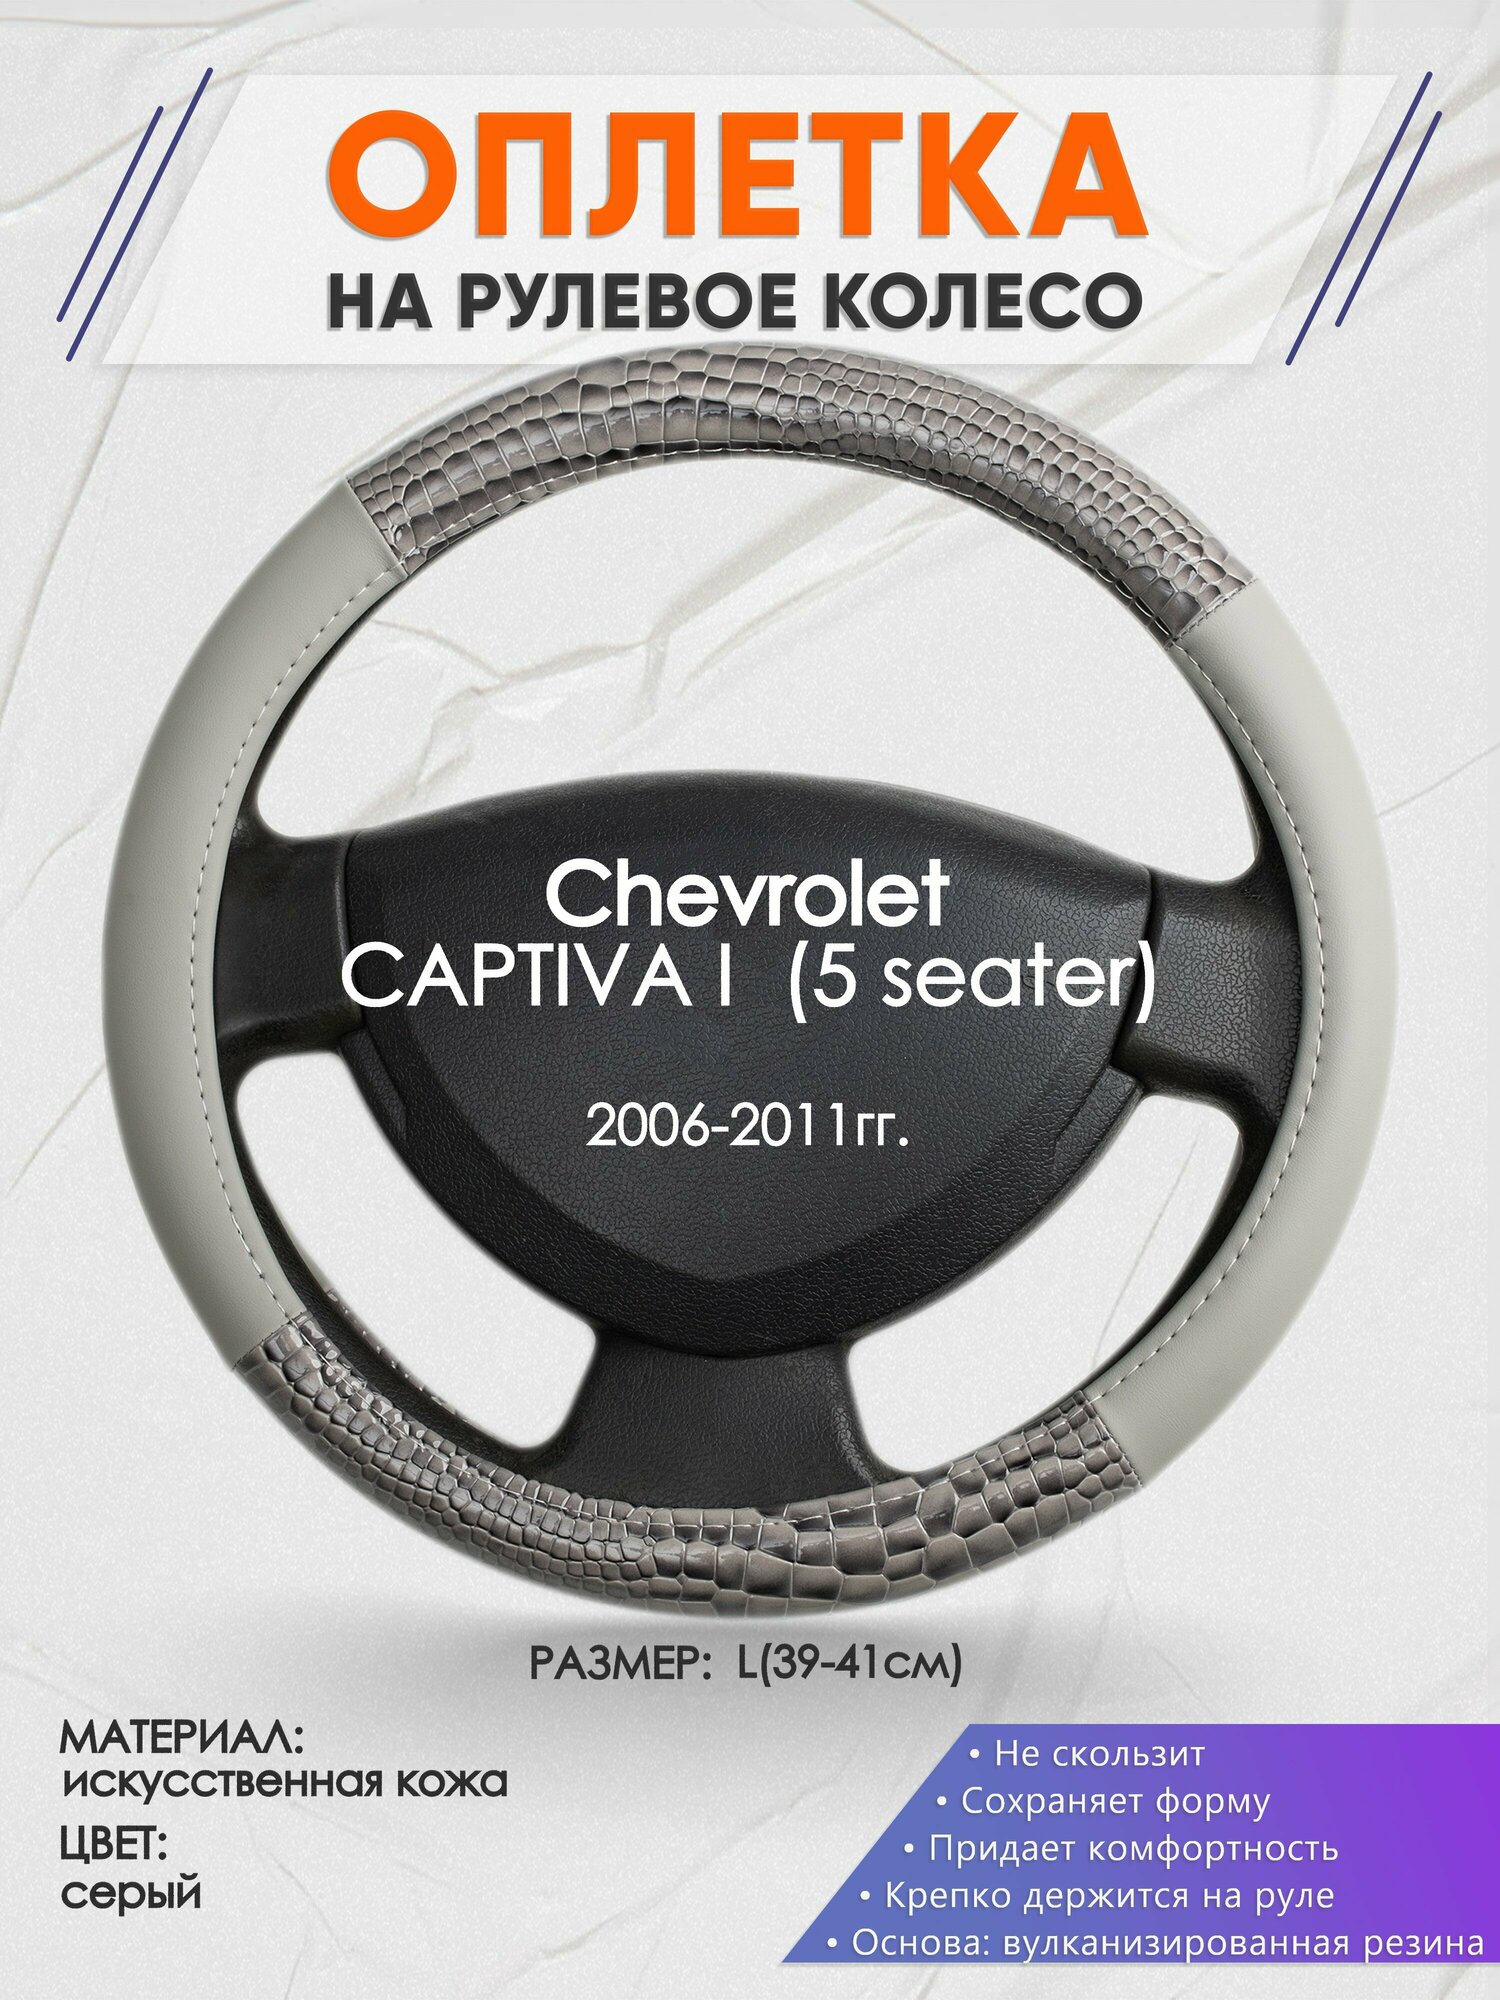 Оплетка на руль для Chevrolet CAPTIVA 1 (5 seater)(Шевроле Каптива) 2006-2011, L(39-41см), Искусственная кожа 84